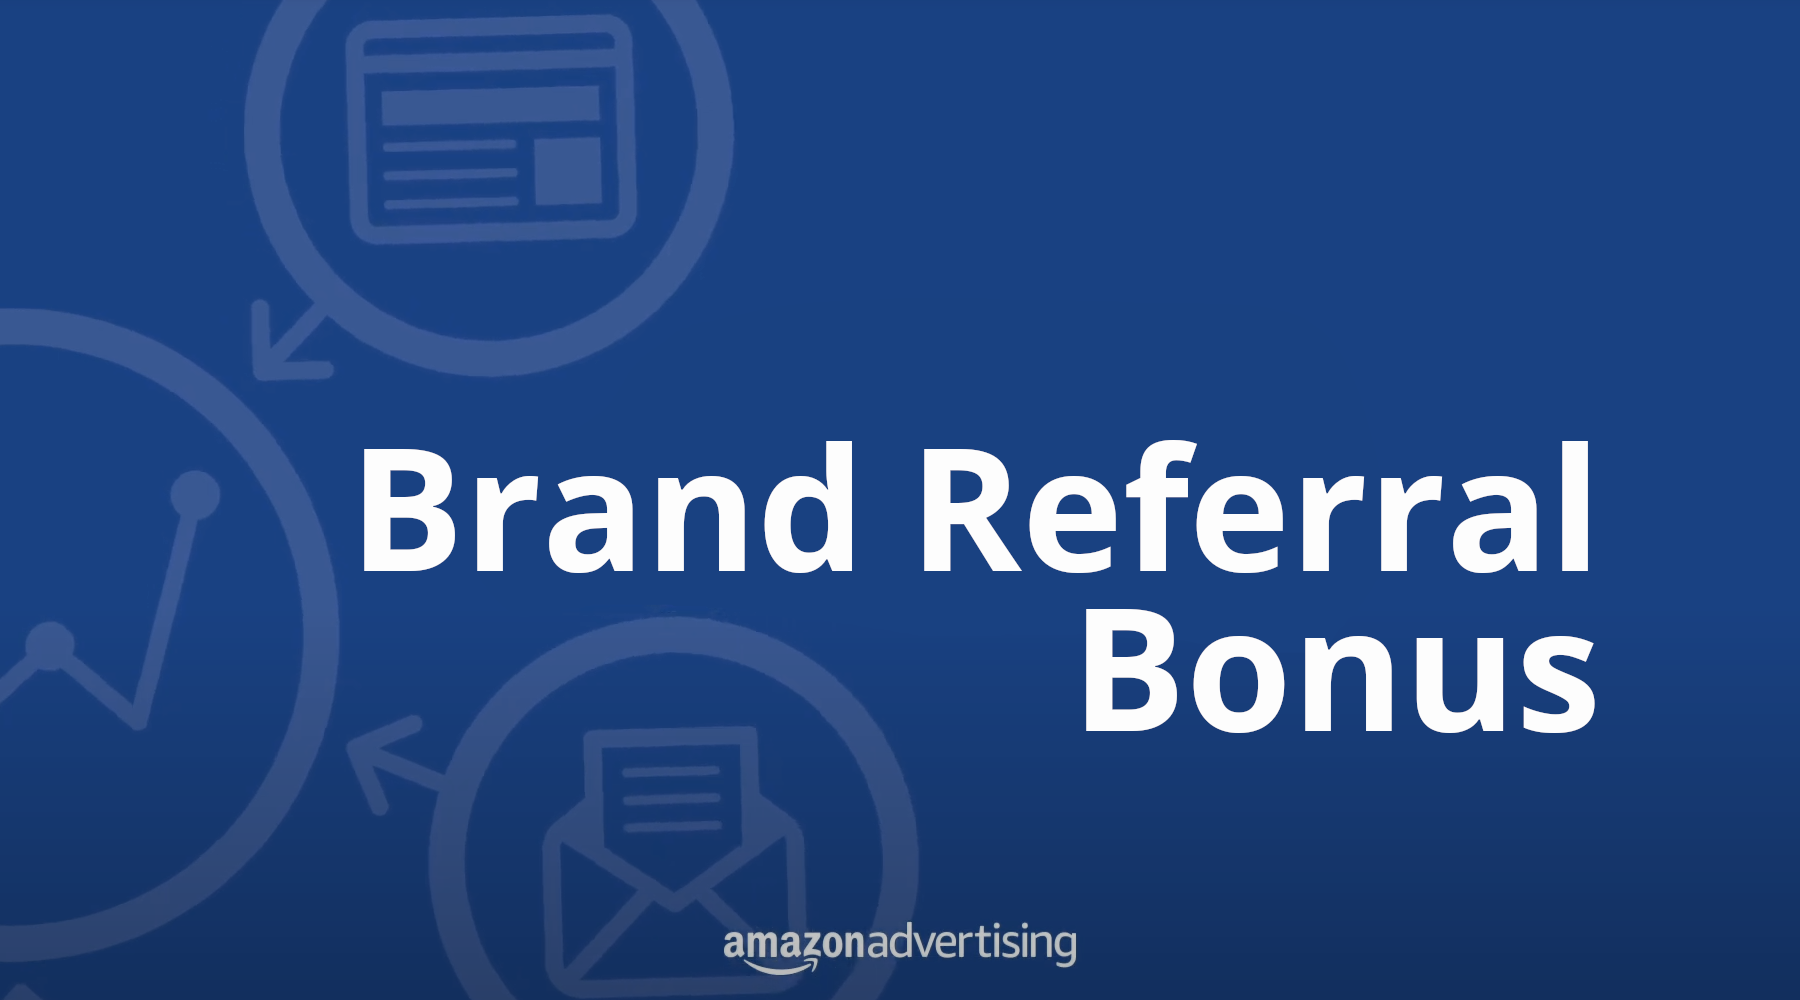 What is the Amazon Brand Referral Bonus Program?